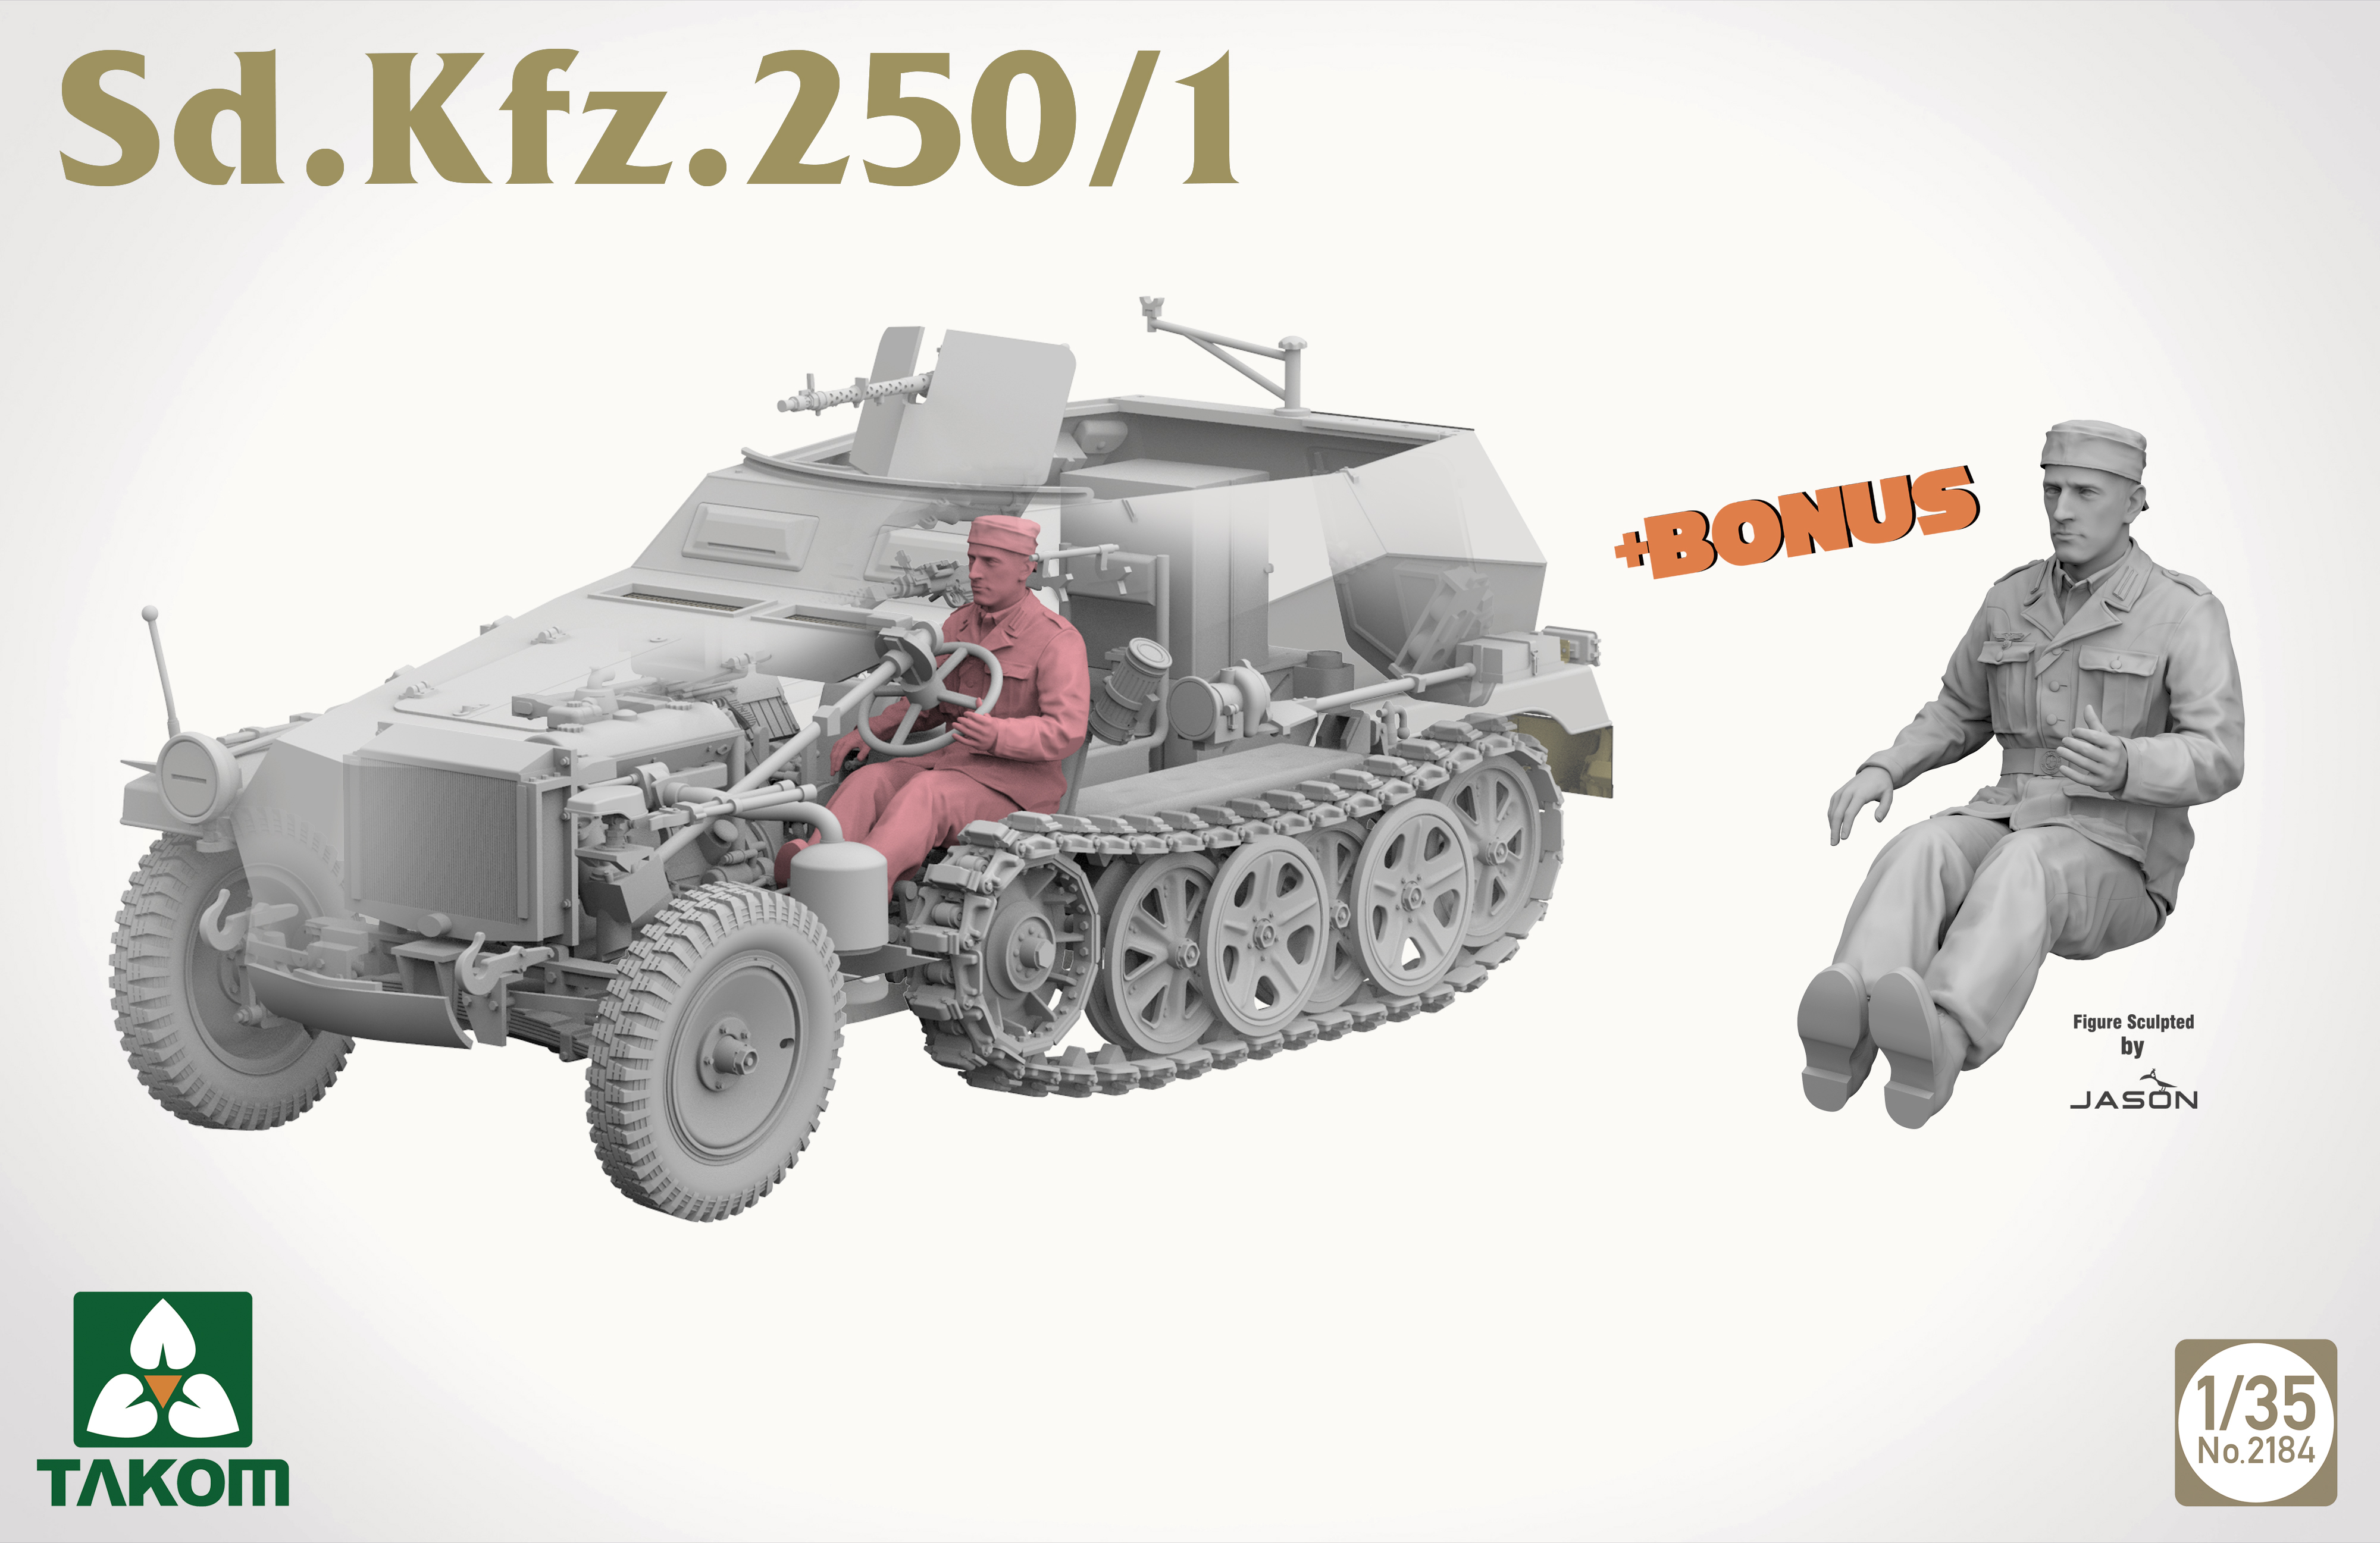 Sd.Kfz. 250/1